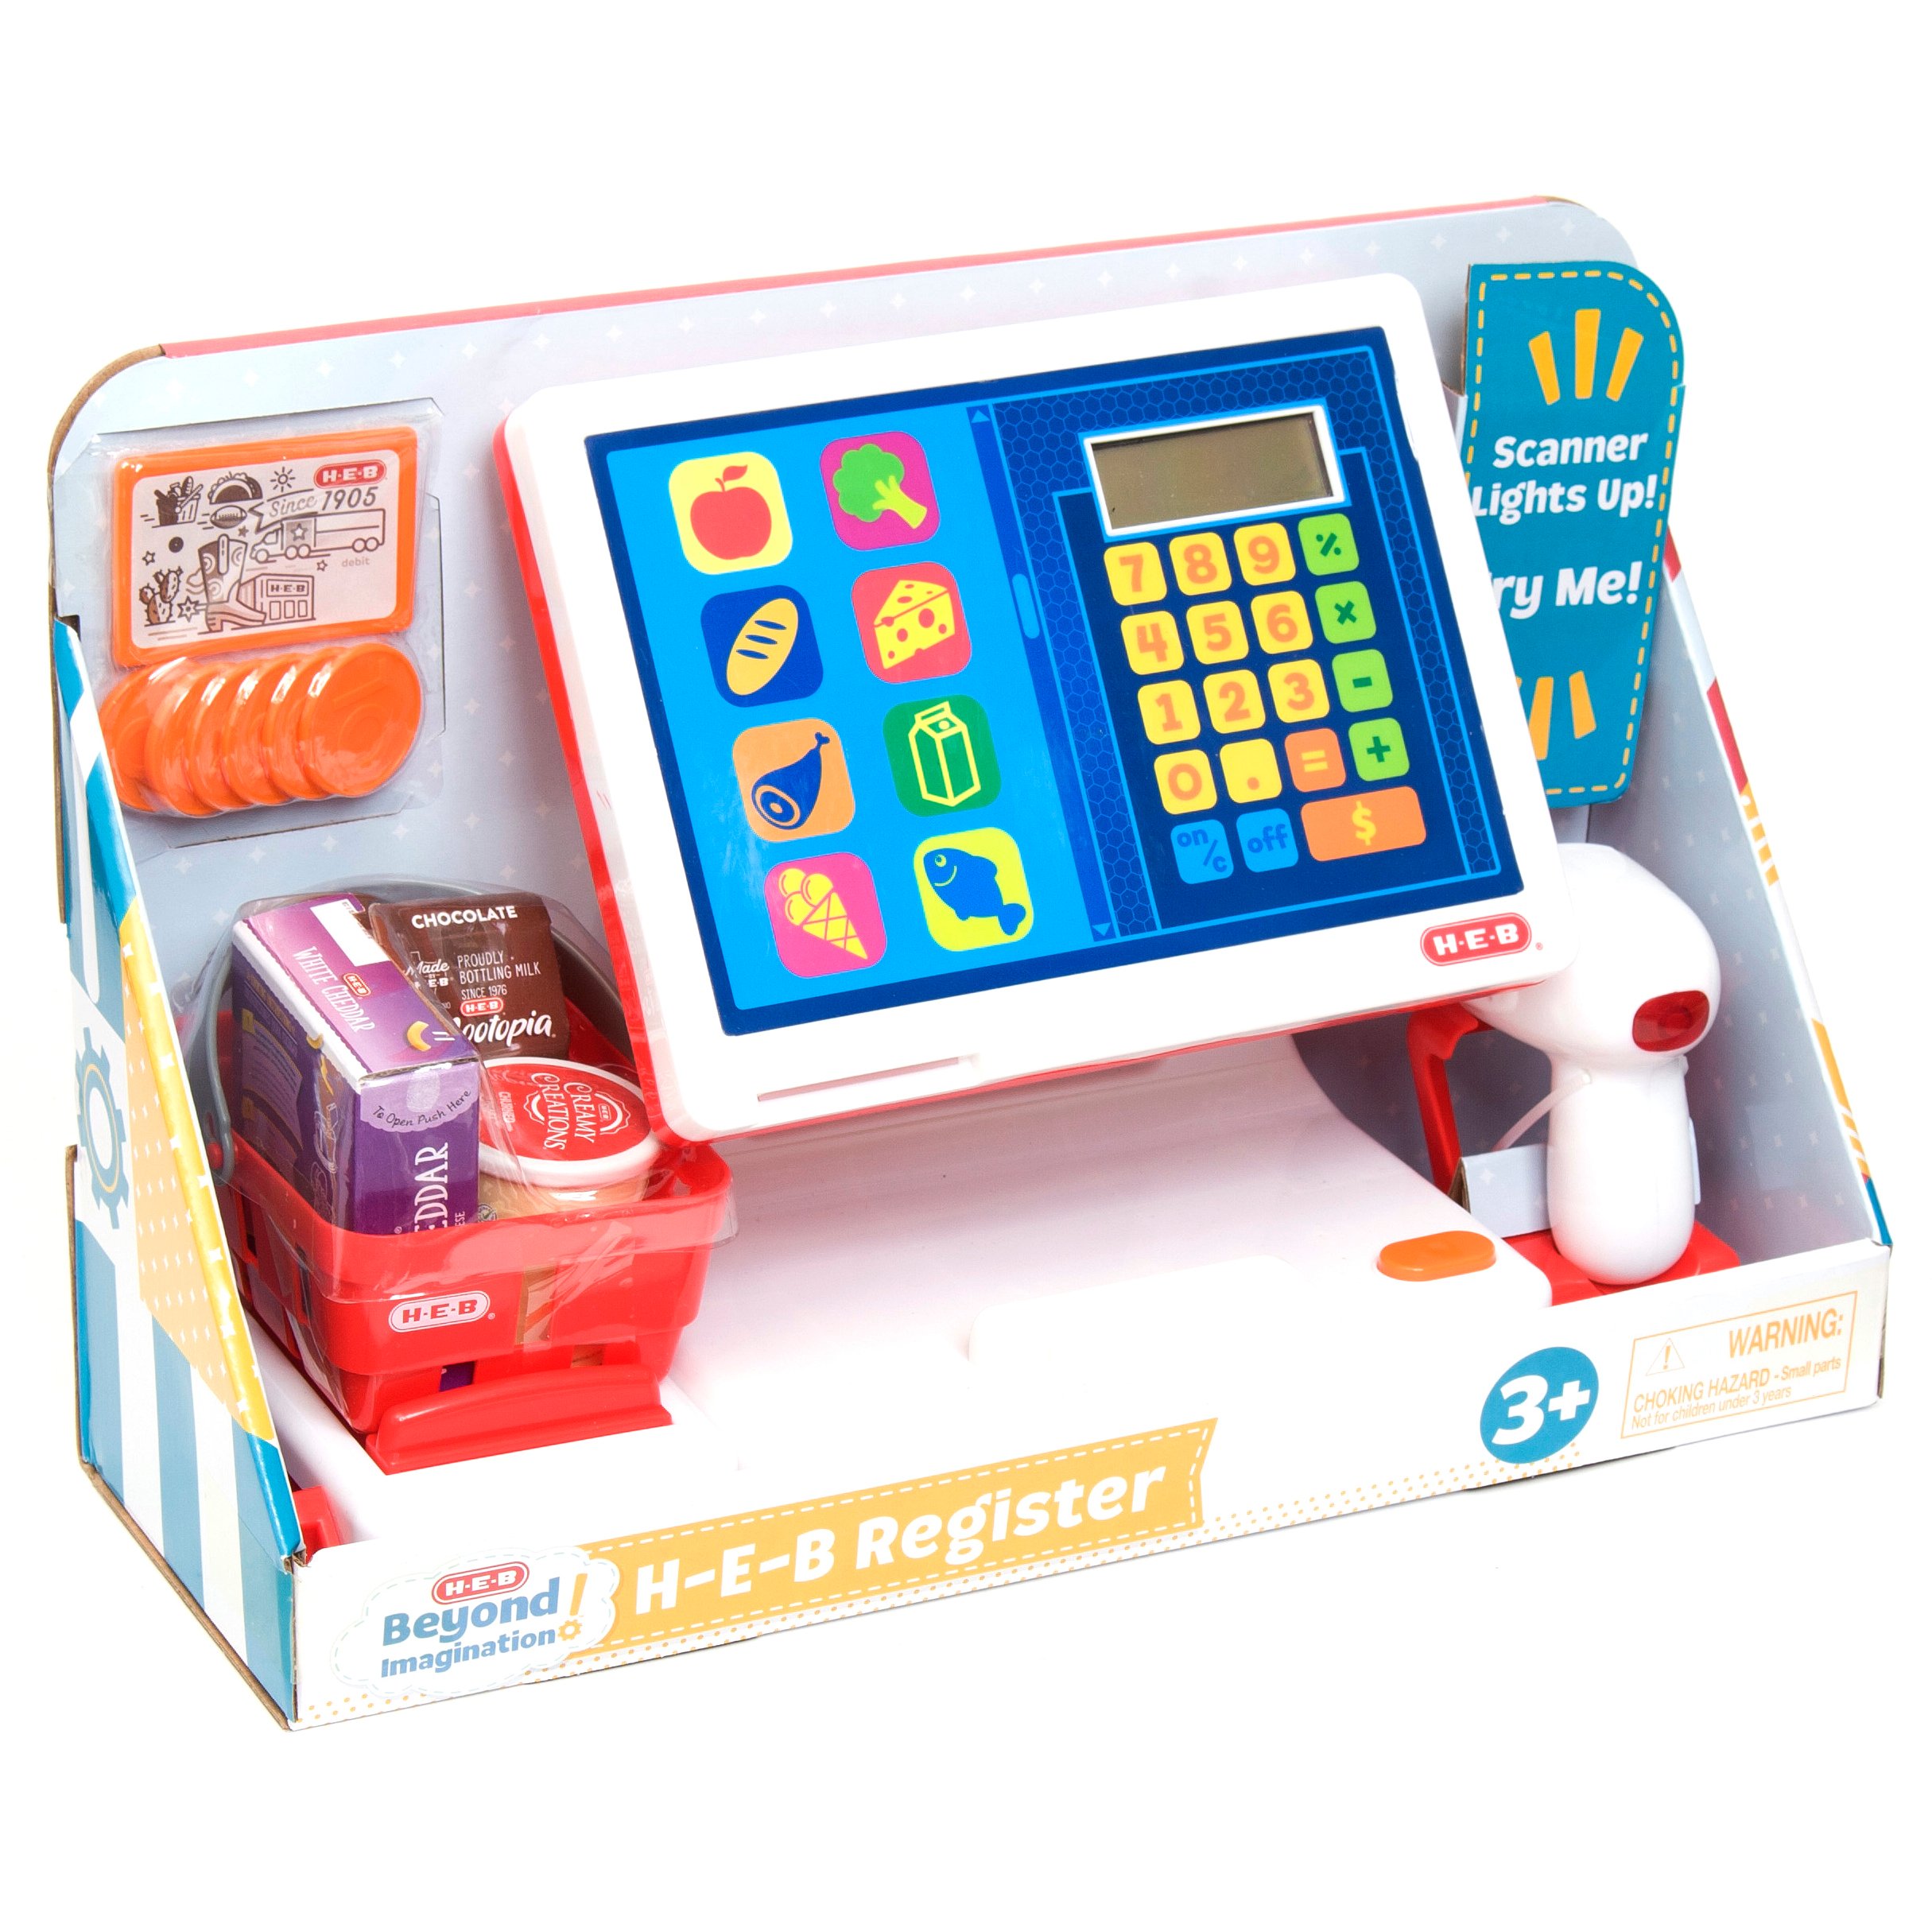 cash register toy for kids